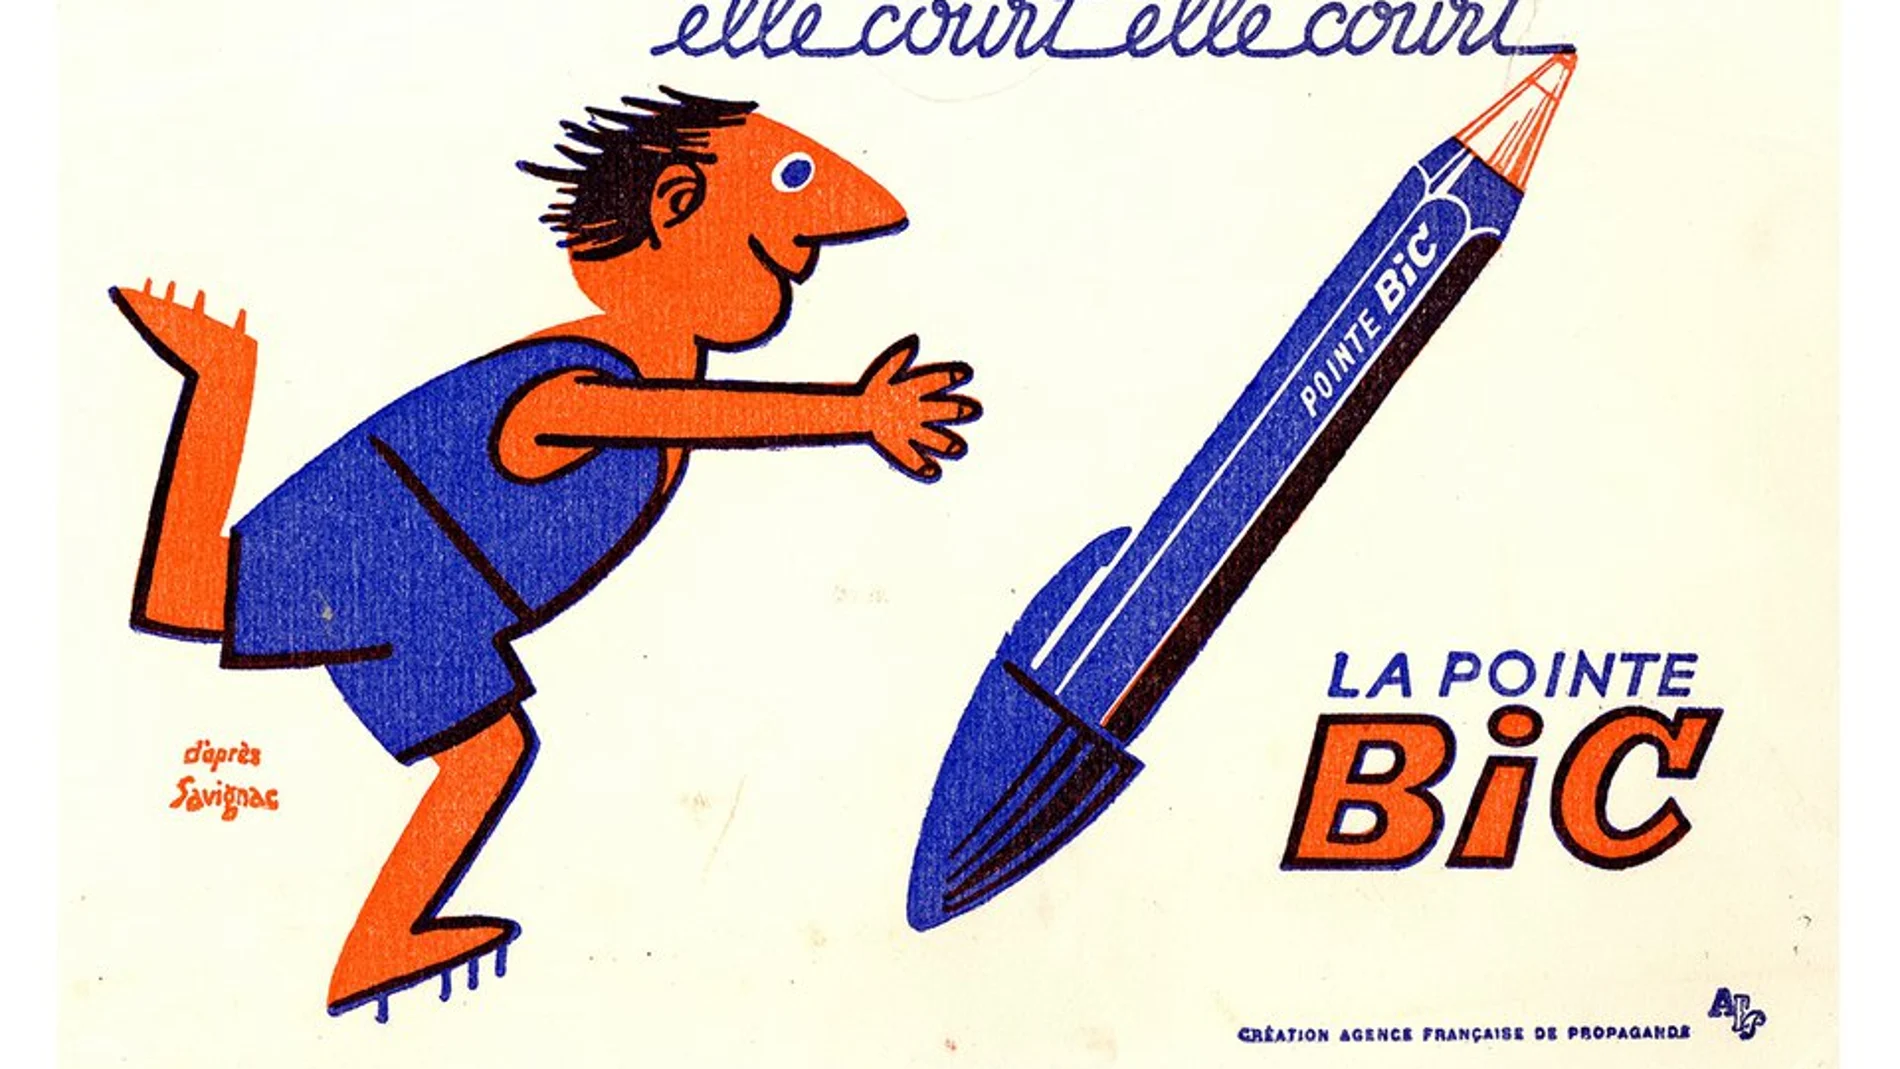 El bolígrafo Bic alcanzó enorme popularidad por la publicidad y su eficacia, siendo usado en la enseñanza y los trabajos